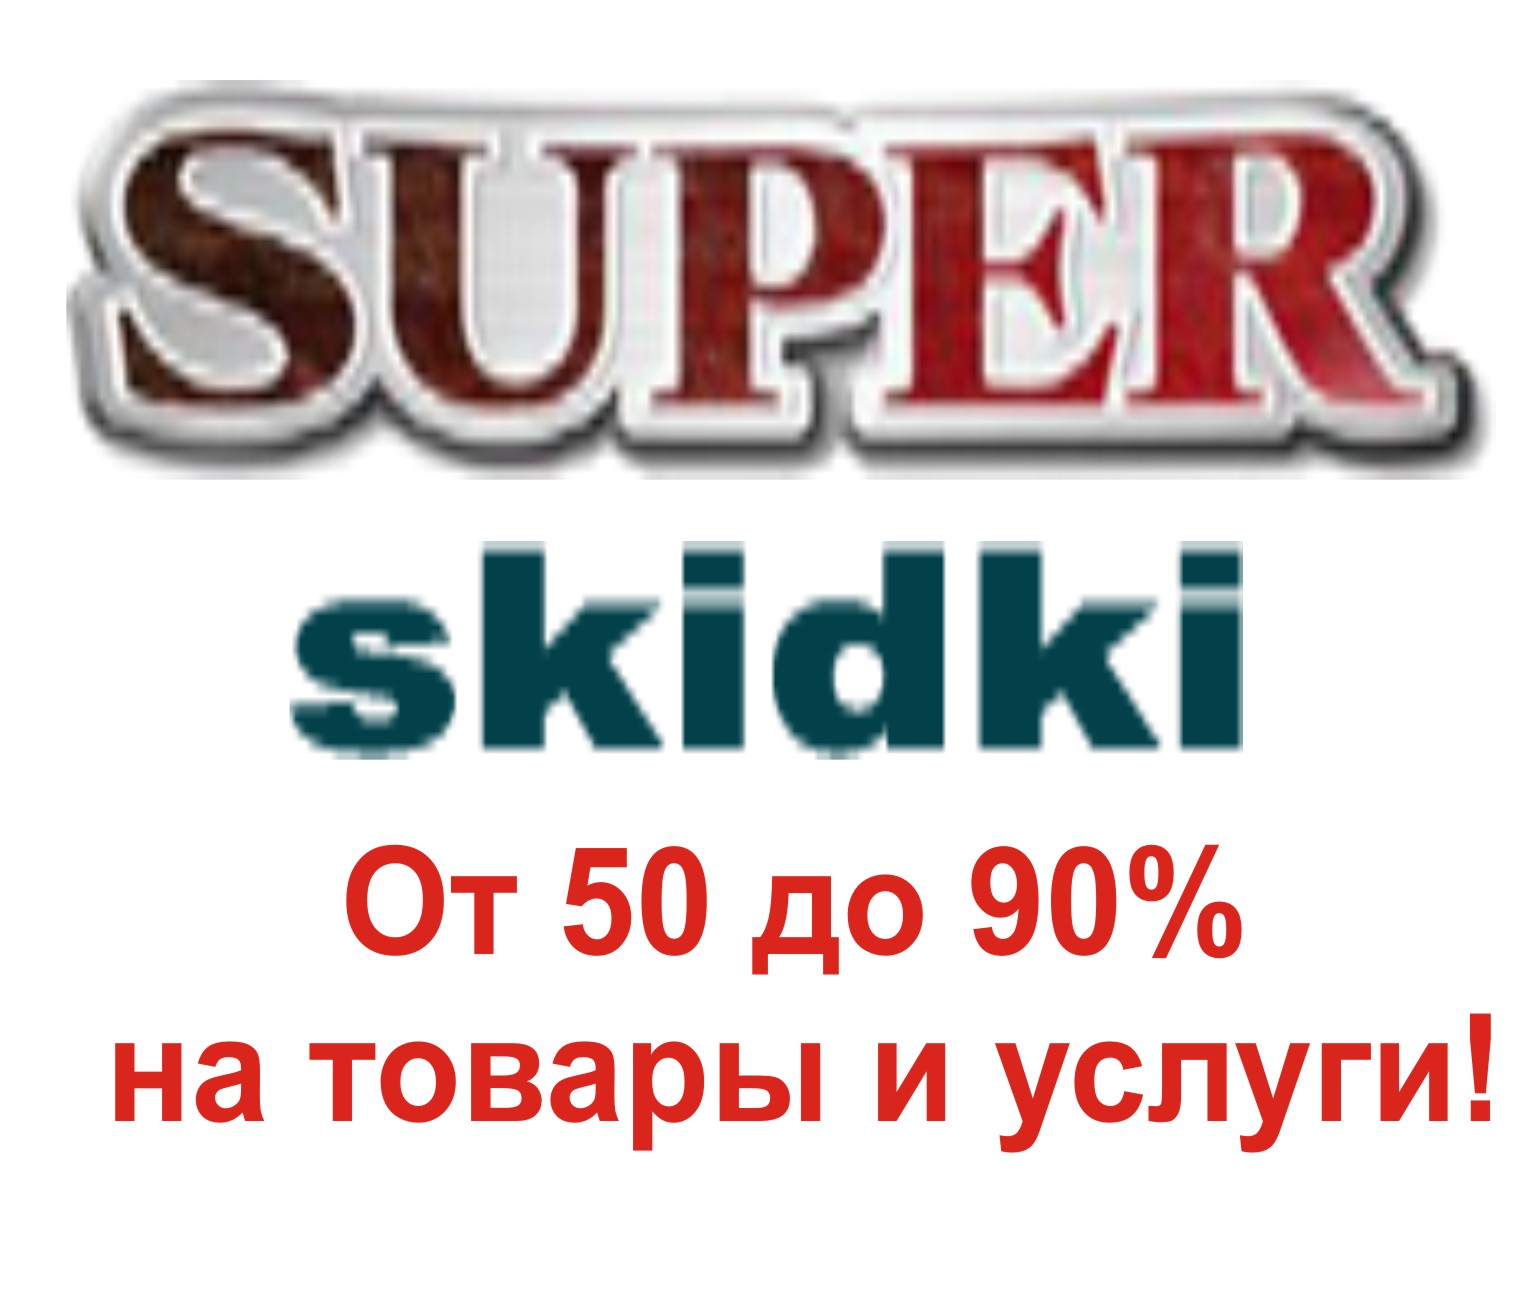 Супер скидки от 50% до 90% в Украине.